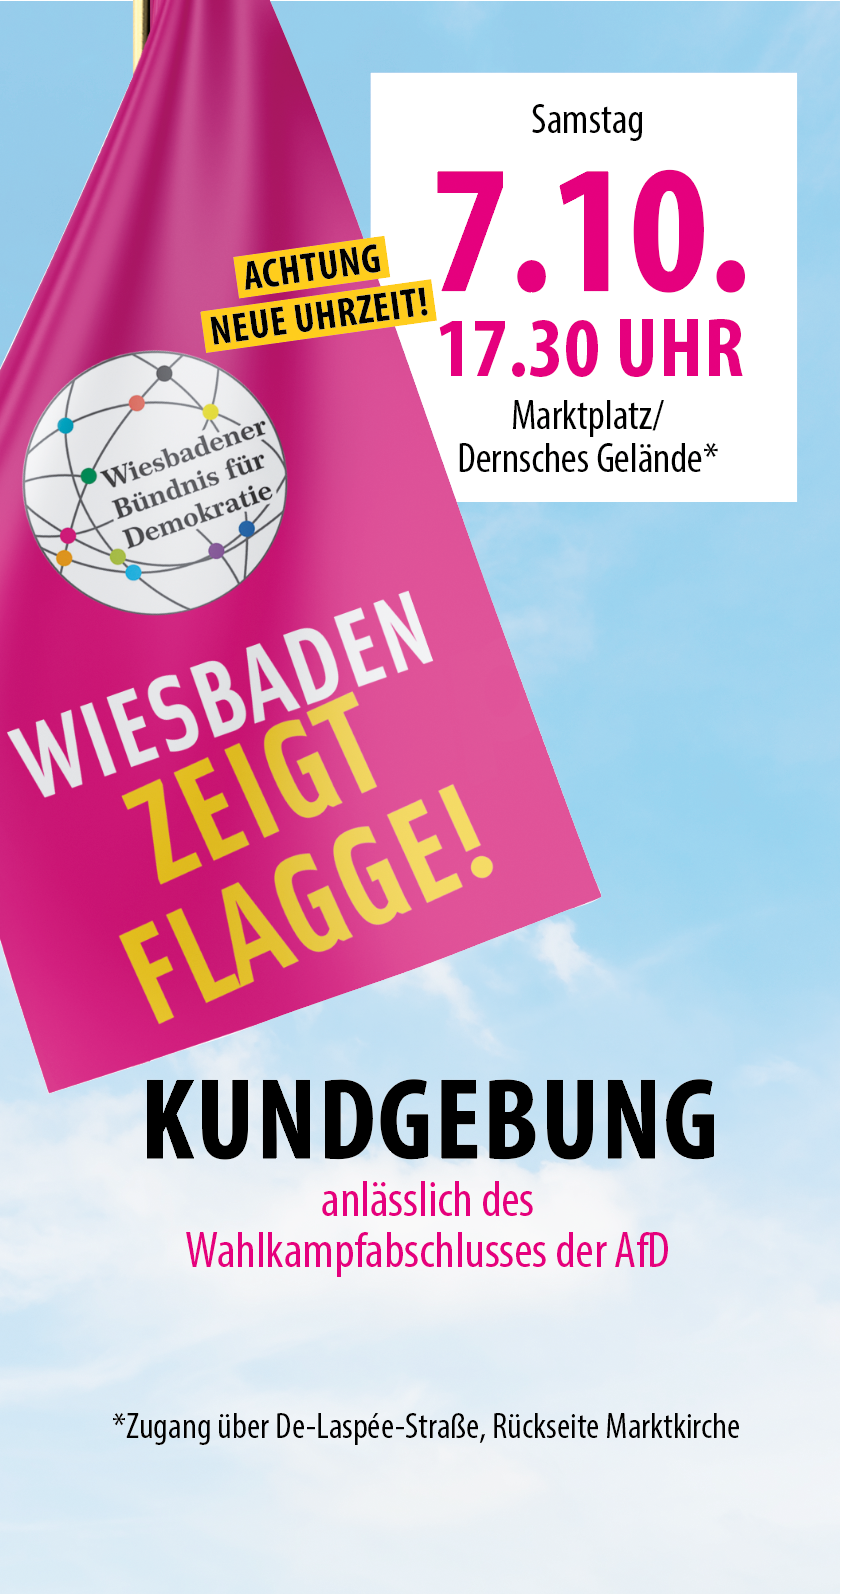 Wiesbaden zeigt Flagge gegen durch und durch extrem rechte Partei:  Protest gegen AfD-Wahlkampfabschluss - sensor Magazin - Wiesbaden - Fühle  deine Stadt